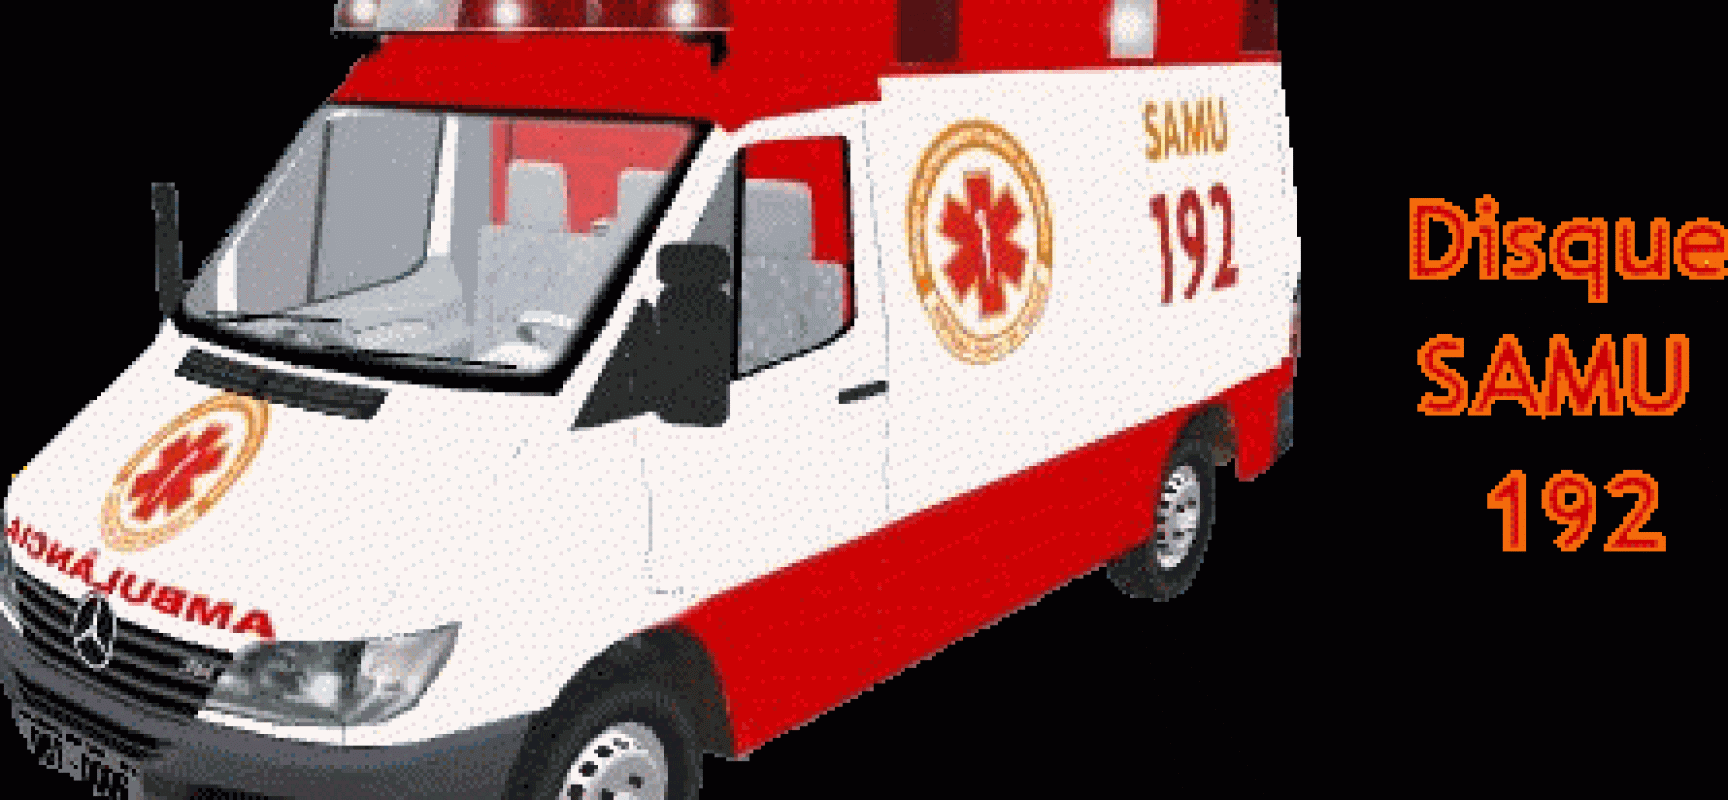 Aquisição de duas novas ambulâncias amplia frota do Samu de Ilhéus